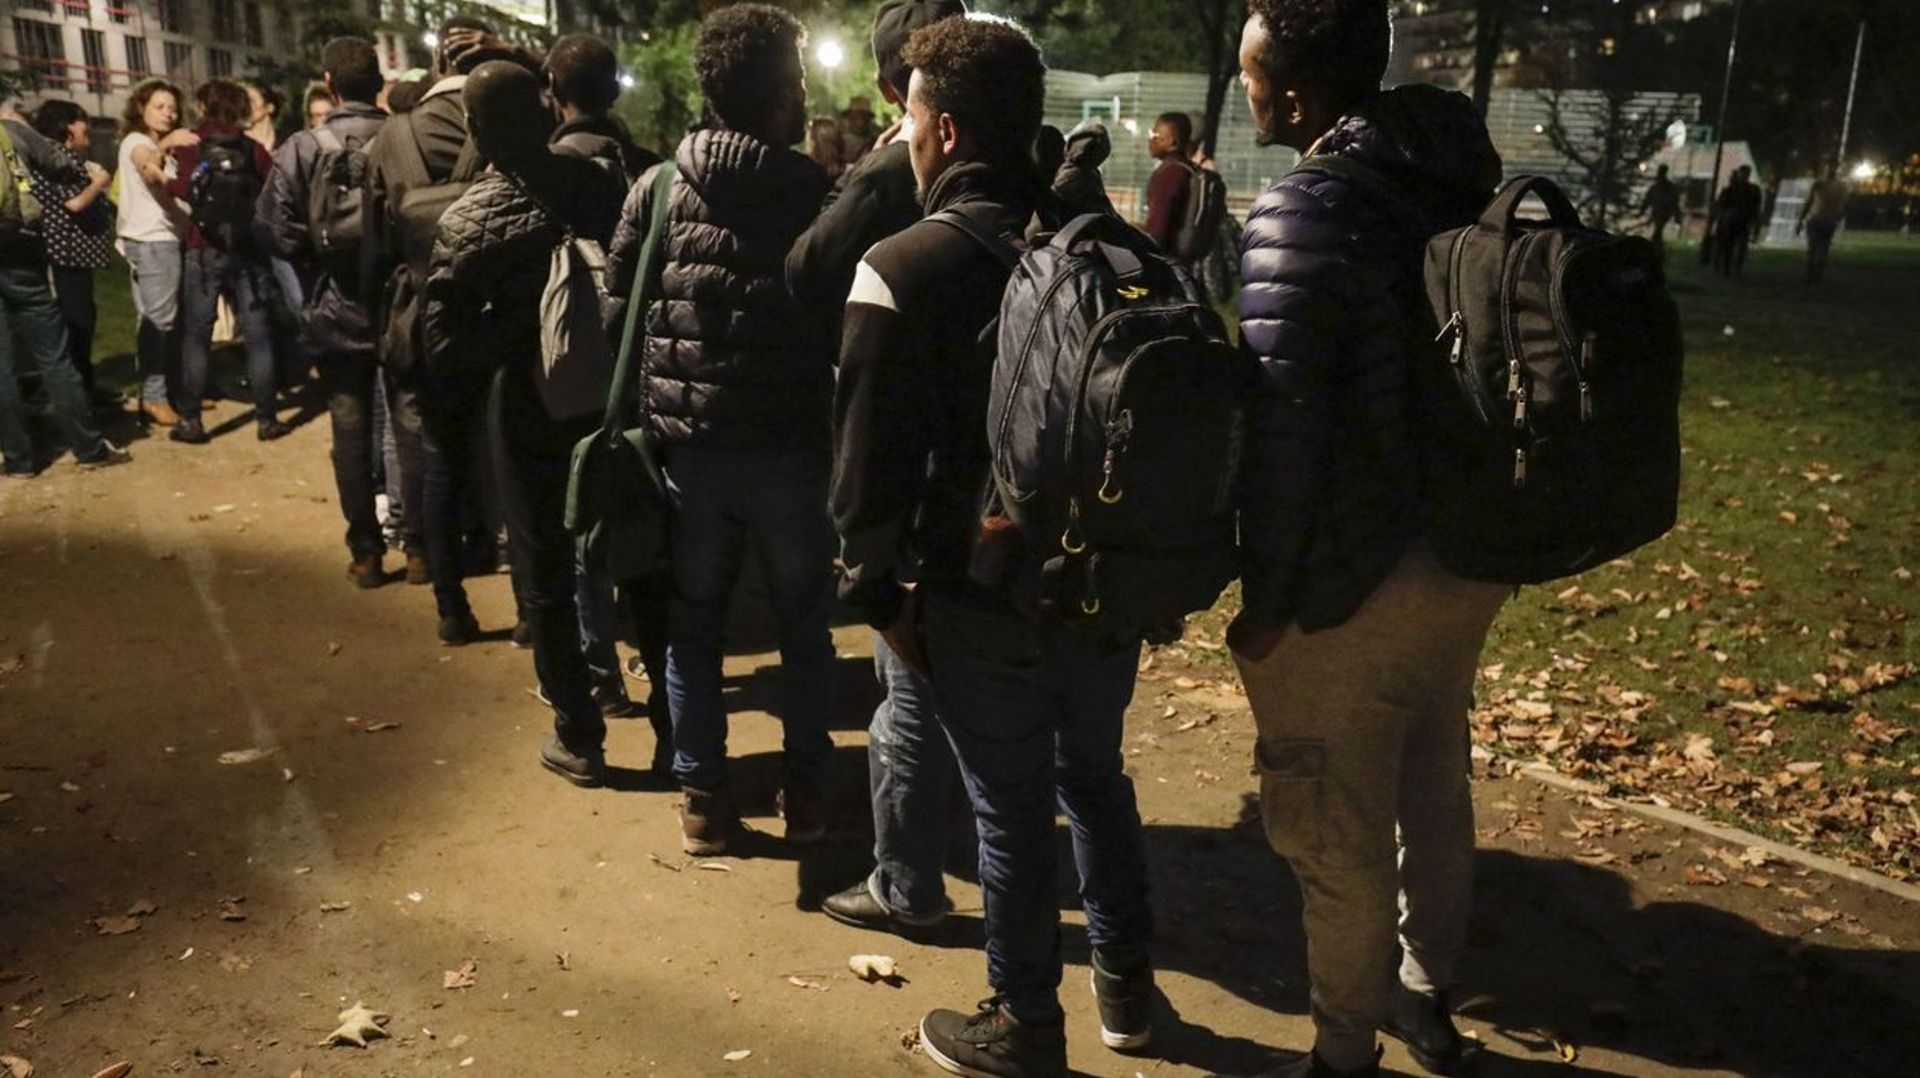 pourquoi la plupart des migrants ne demandent pas l asile en belgique et veulent rejoindre l angleterre